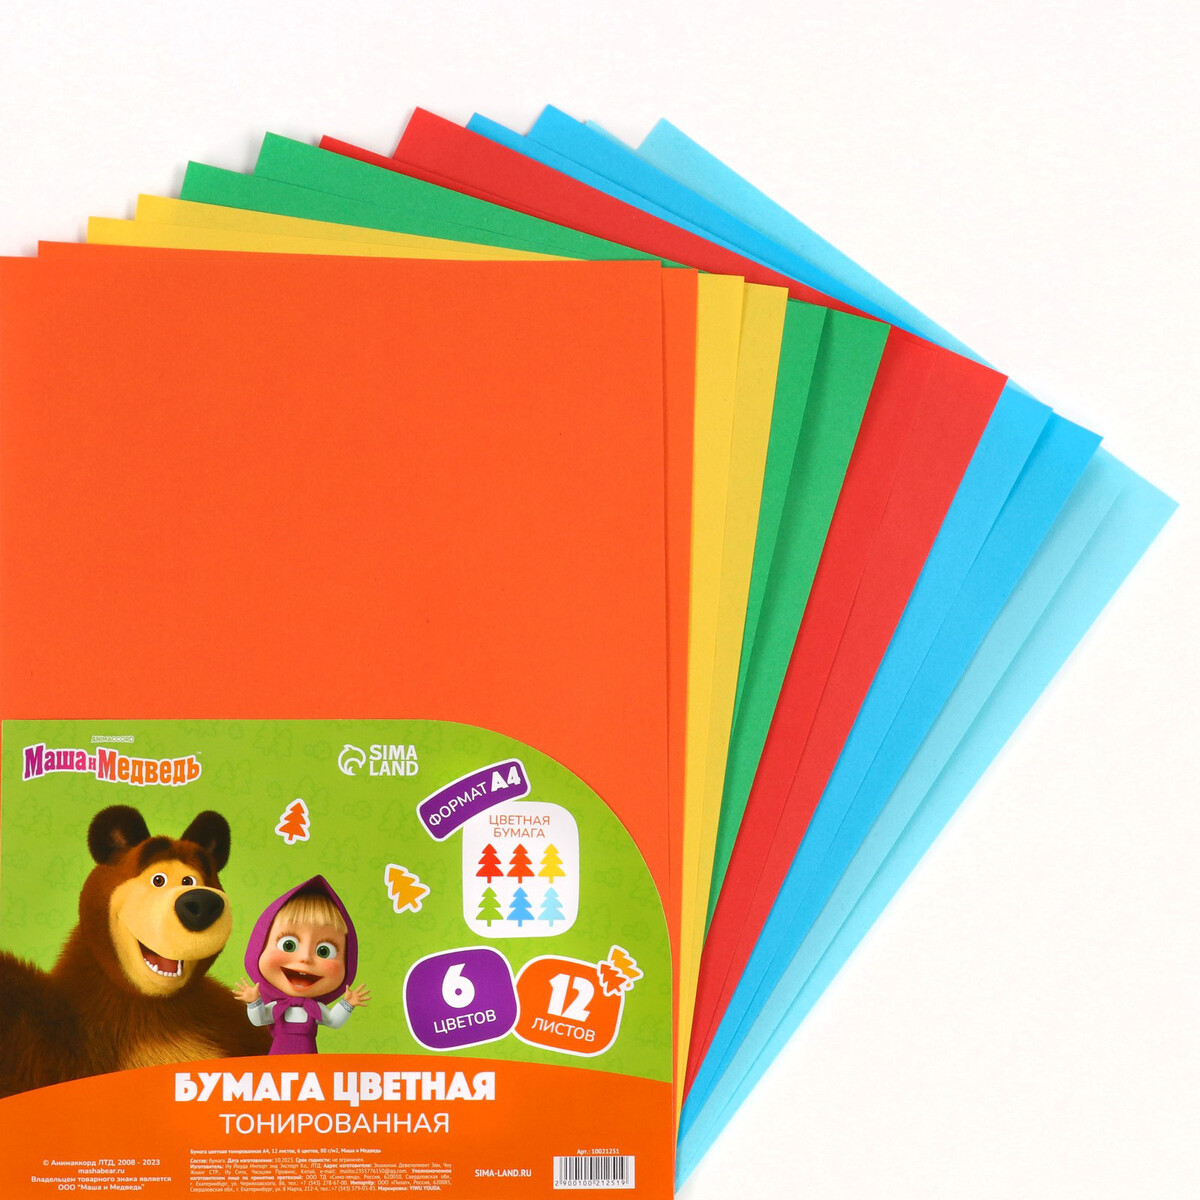 Бумага цветная тонированная а4, 12 листов, 6 цветов, 80 г/м2, маша и медведь Маша и медведь